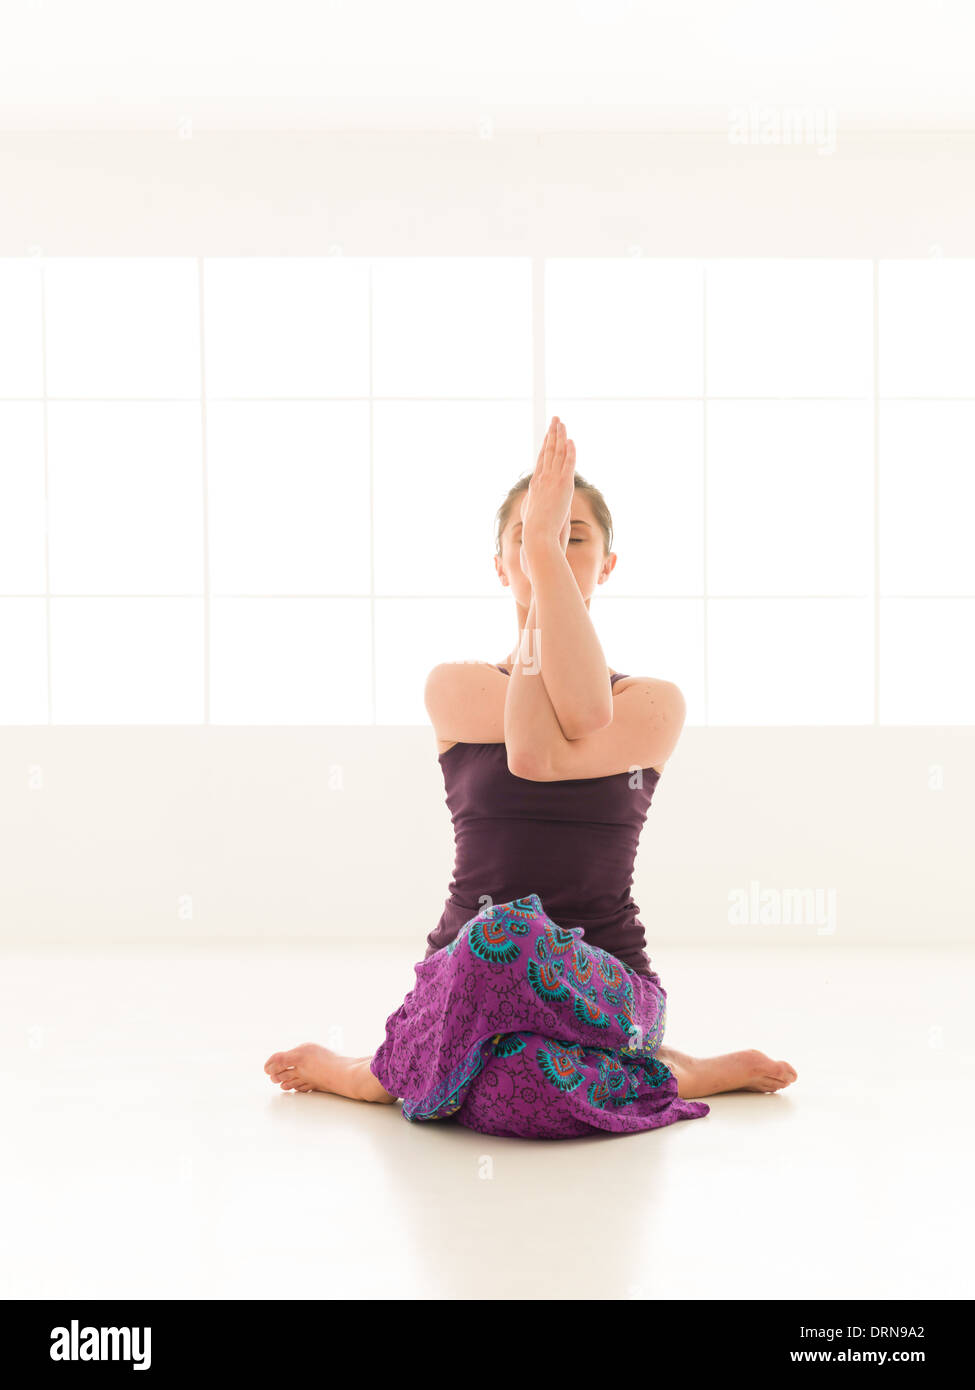 15 Hardest Yoga Poses